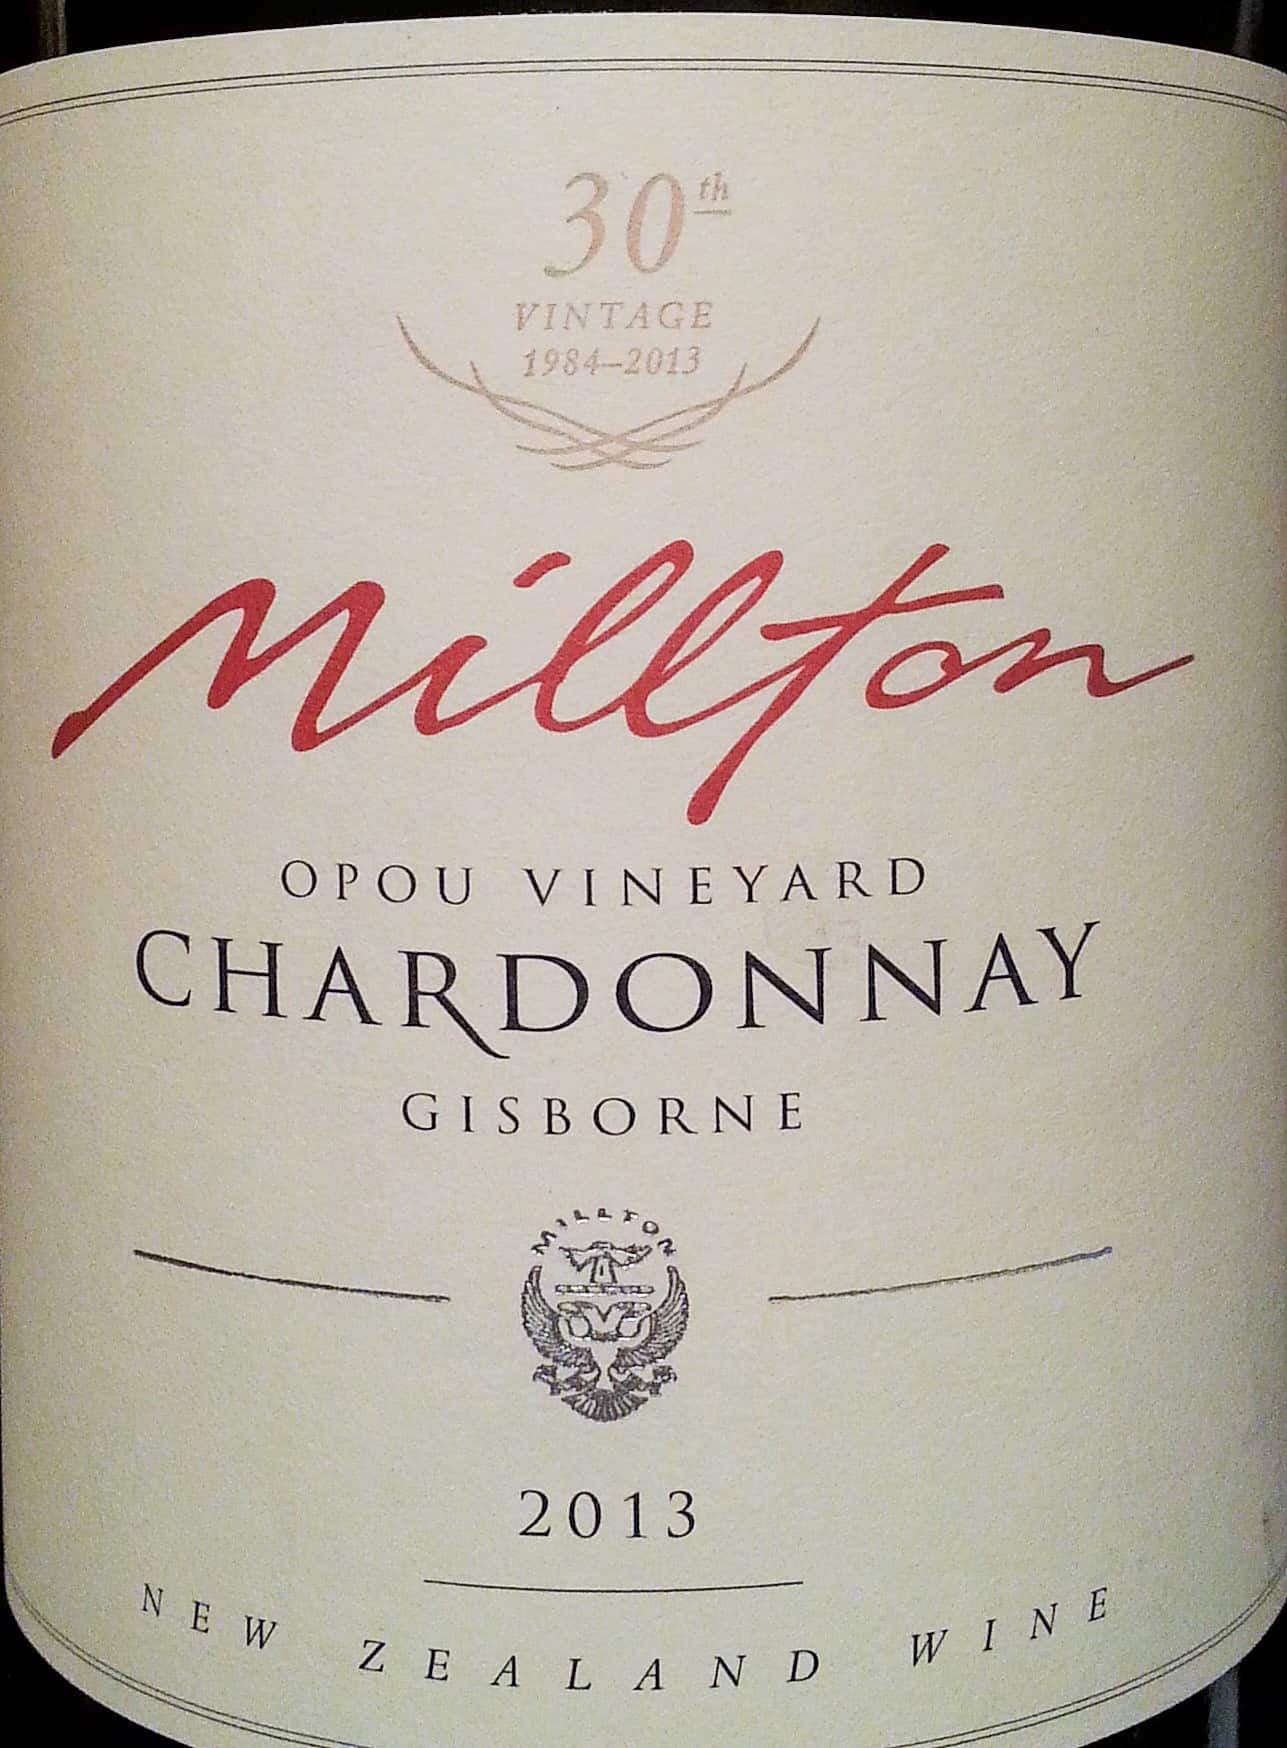 Millton ‘Opou Valley’ Chardonnay 2013